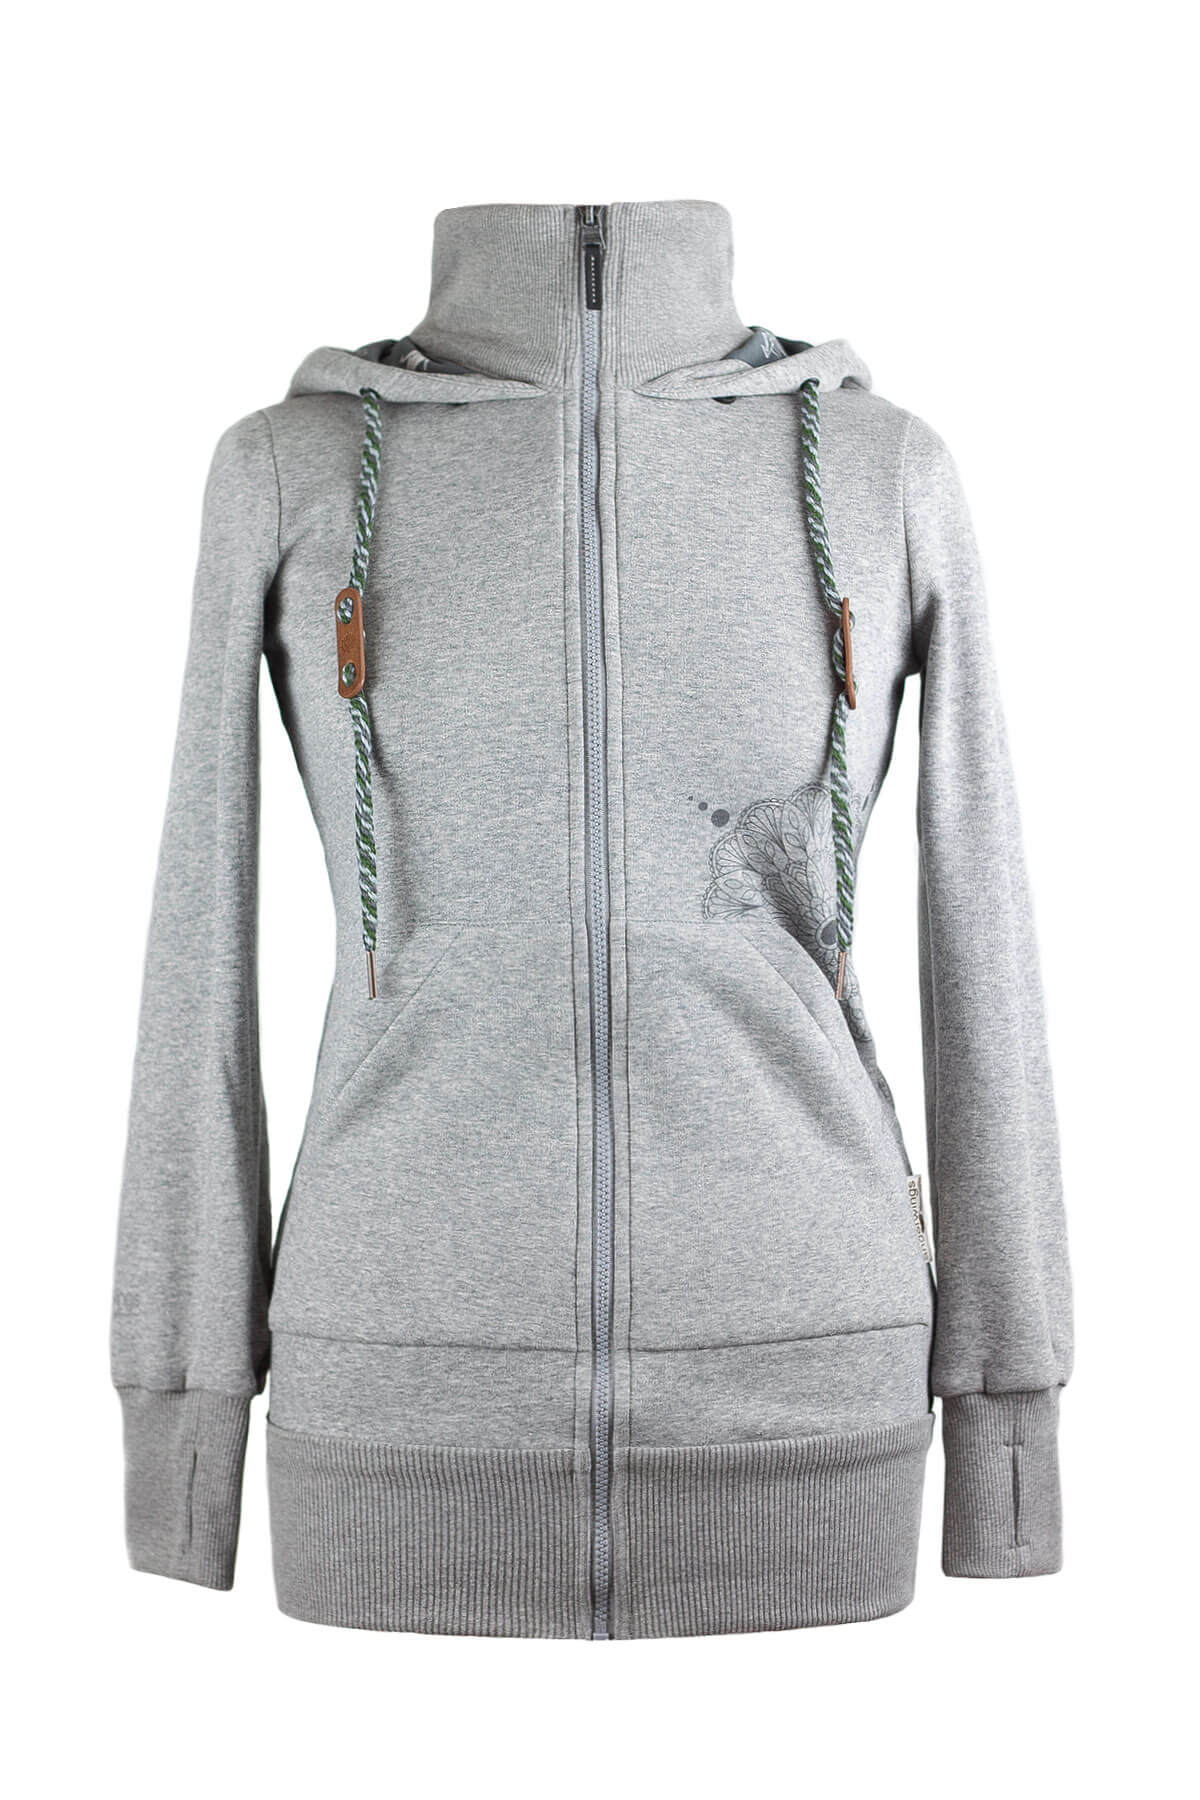 hoodie-gris2